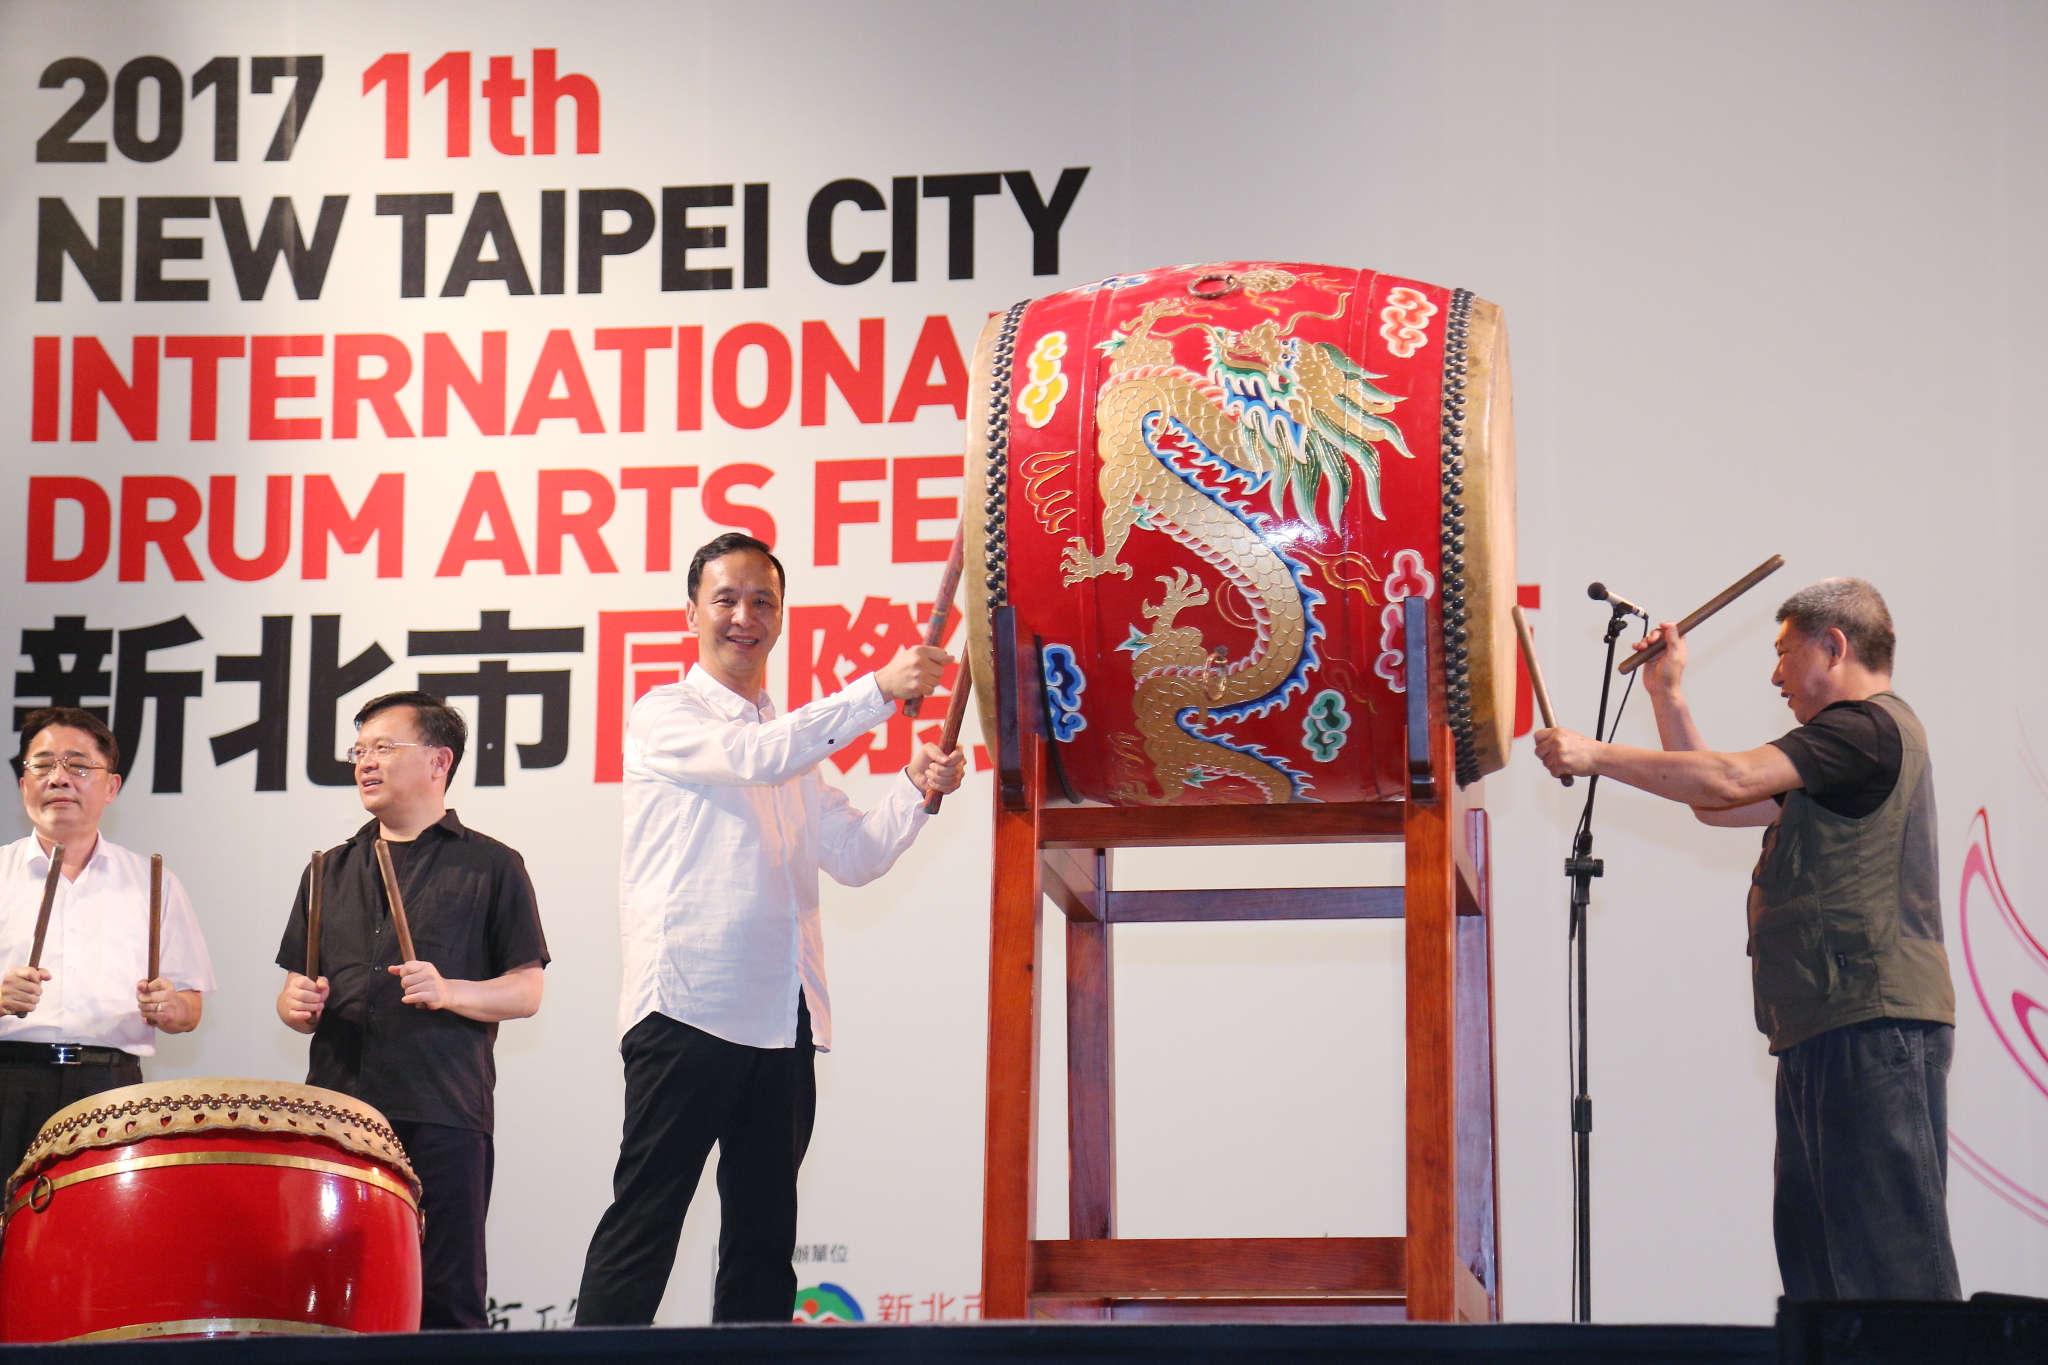 朱市長與貴賓一起擊鼓揭開2017新北市國際鼓藝節序幕